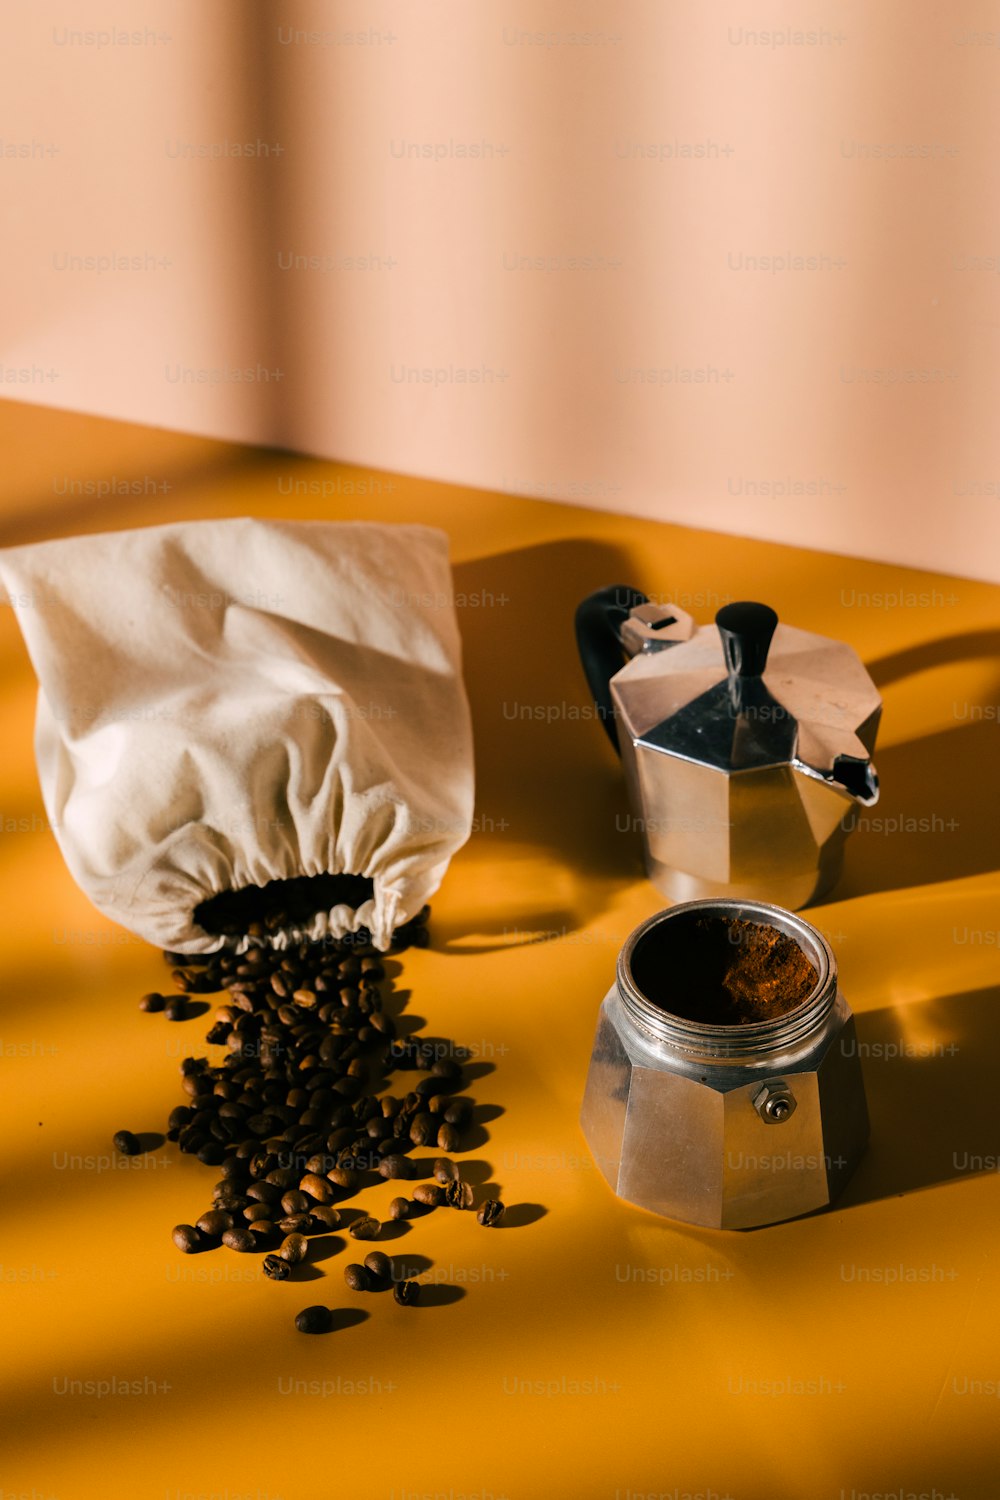 eine Dose Kaffee neben einem Behälter mit Kaffeebohnen